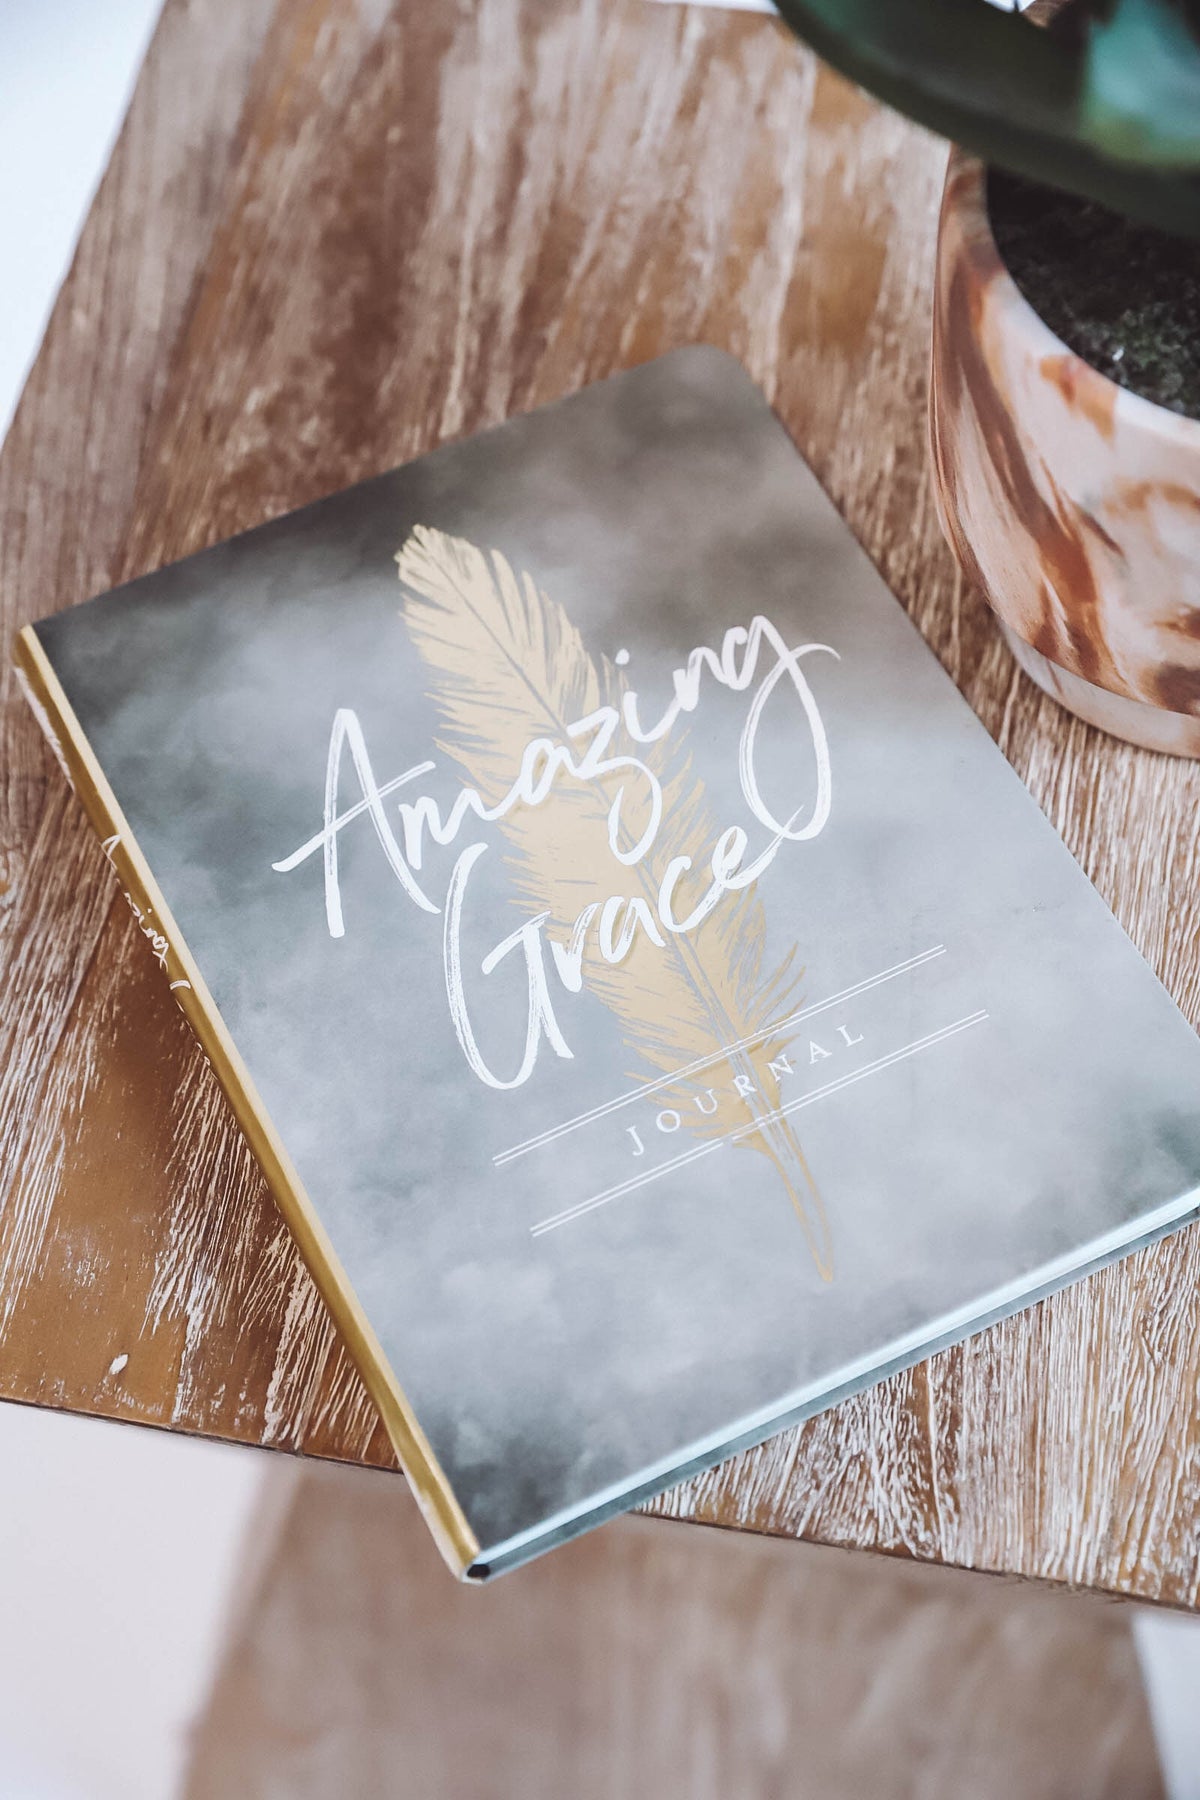 Amazing Grace-Christian Journal